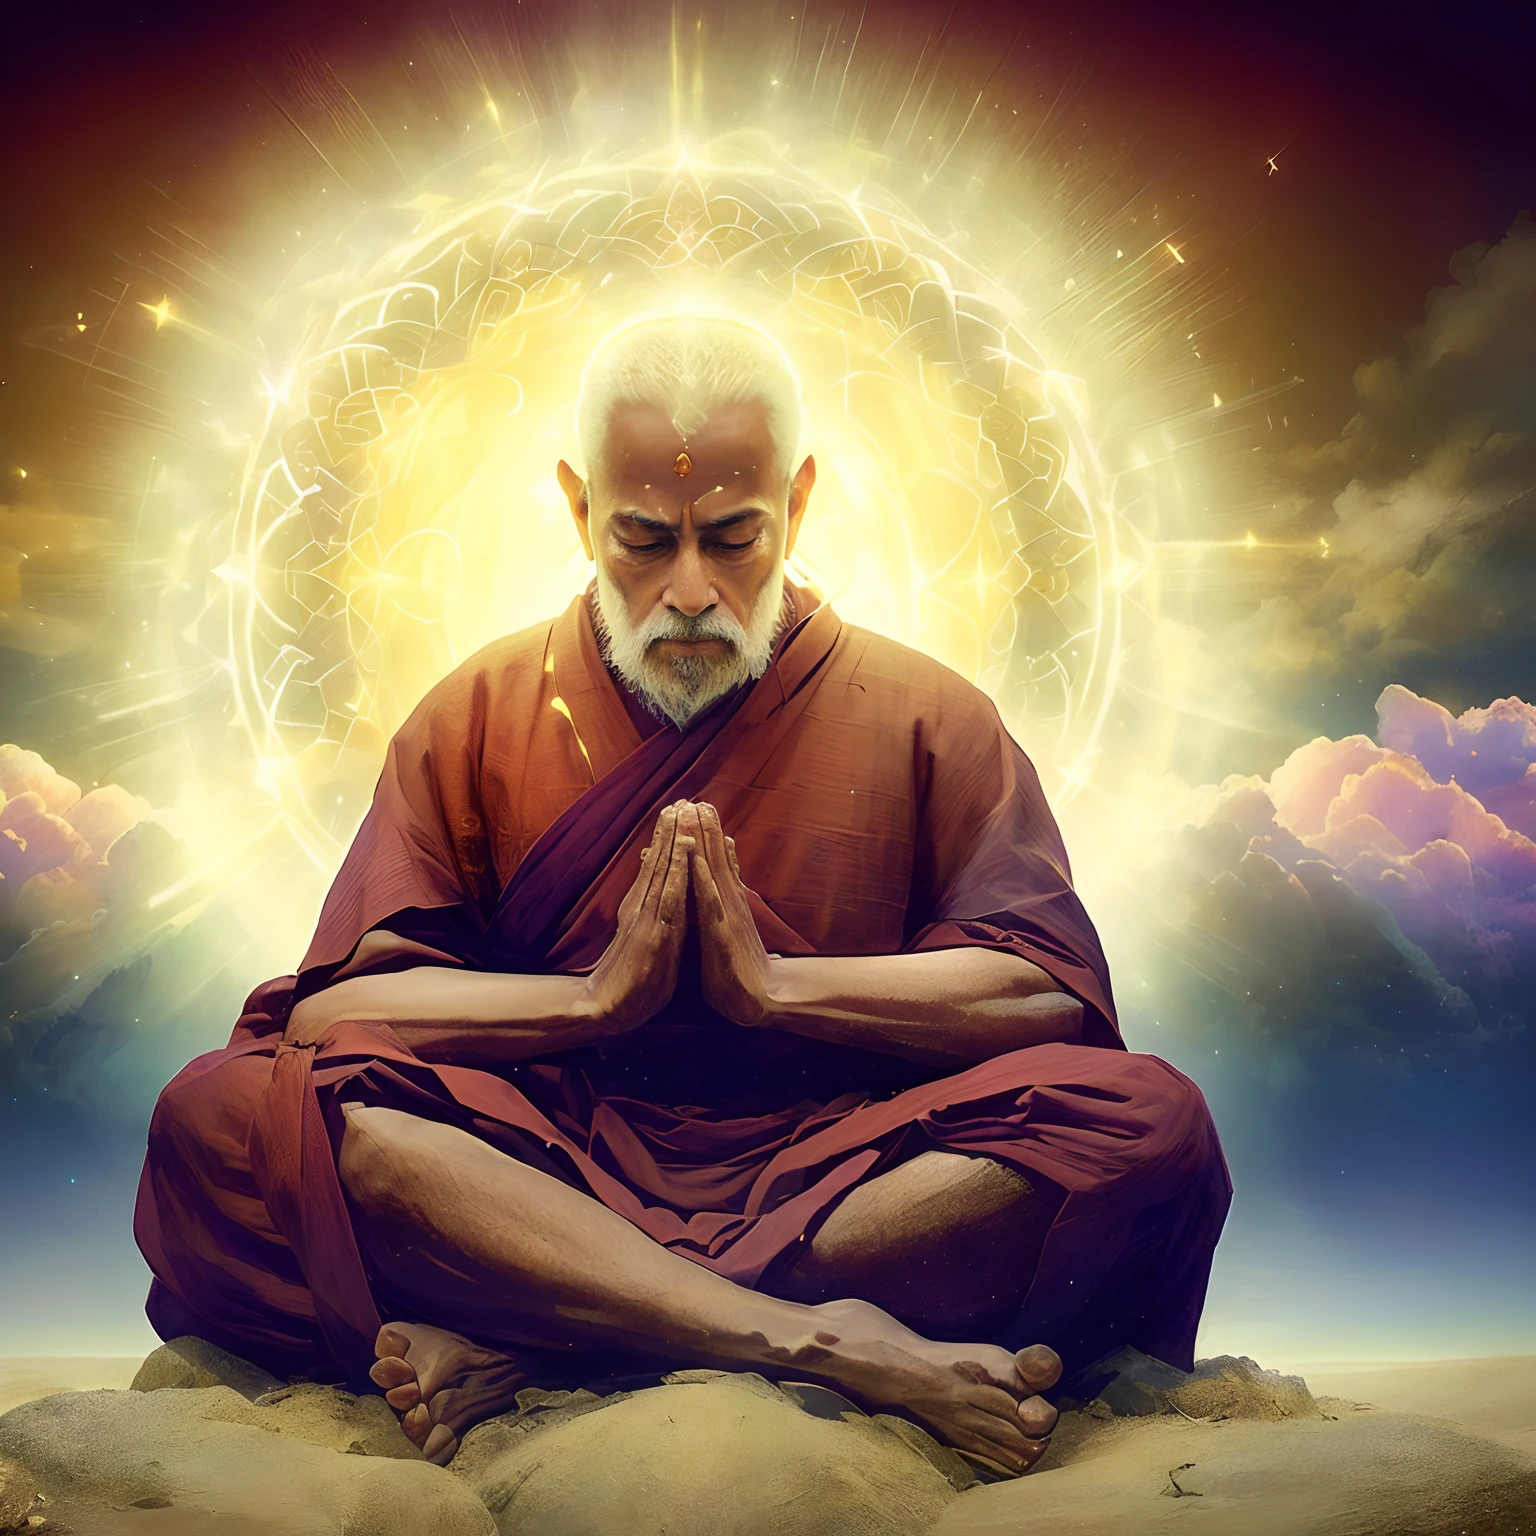 瞑想の姿勢で座っている男性のアラフェッド画像, 精神的な照明, 僧侶は瞑想する, 地面を見下ろす聖人, ヒンズー教の瞑想の段階, あなたの心は永遠を熟考しています, 2 1世紀の修道士, 瞑想して祈る, 賢明な老インド人グル, 座禅, 瞑想する僧侶, 悟りへの道, アップライト, 点灯, 精神的進化